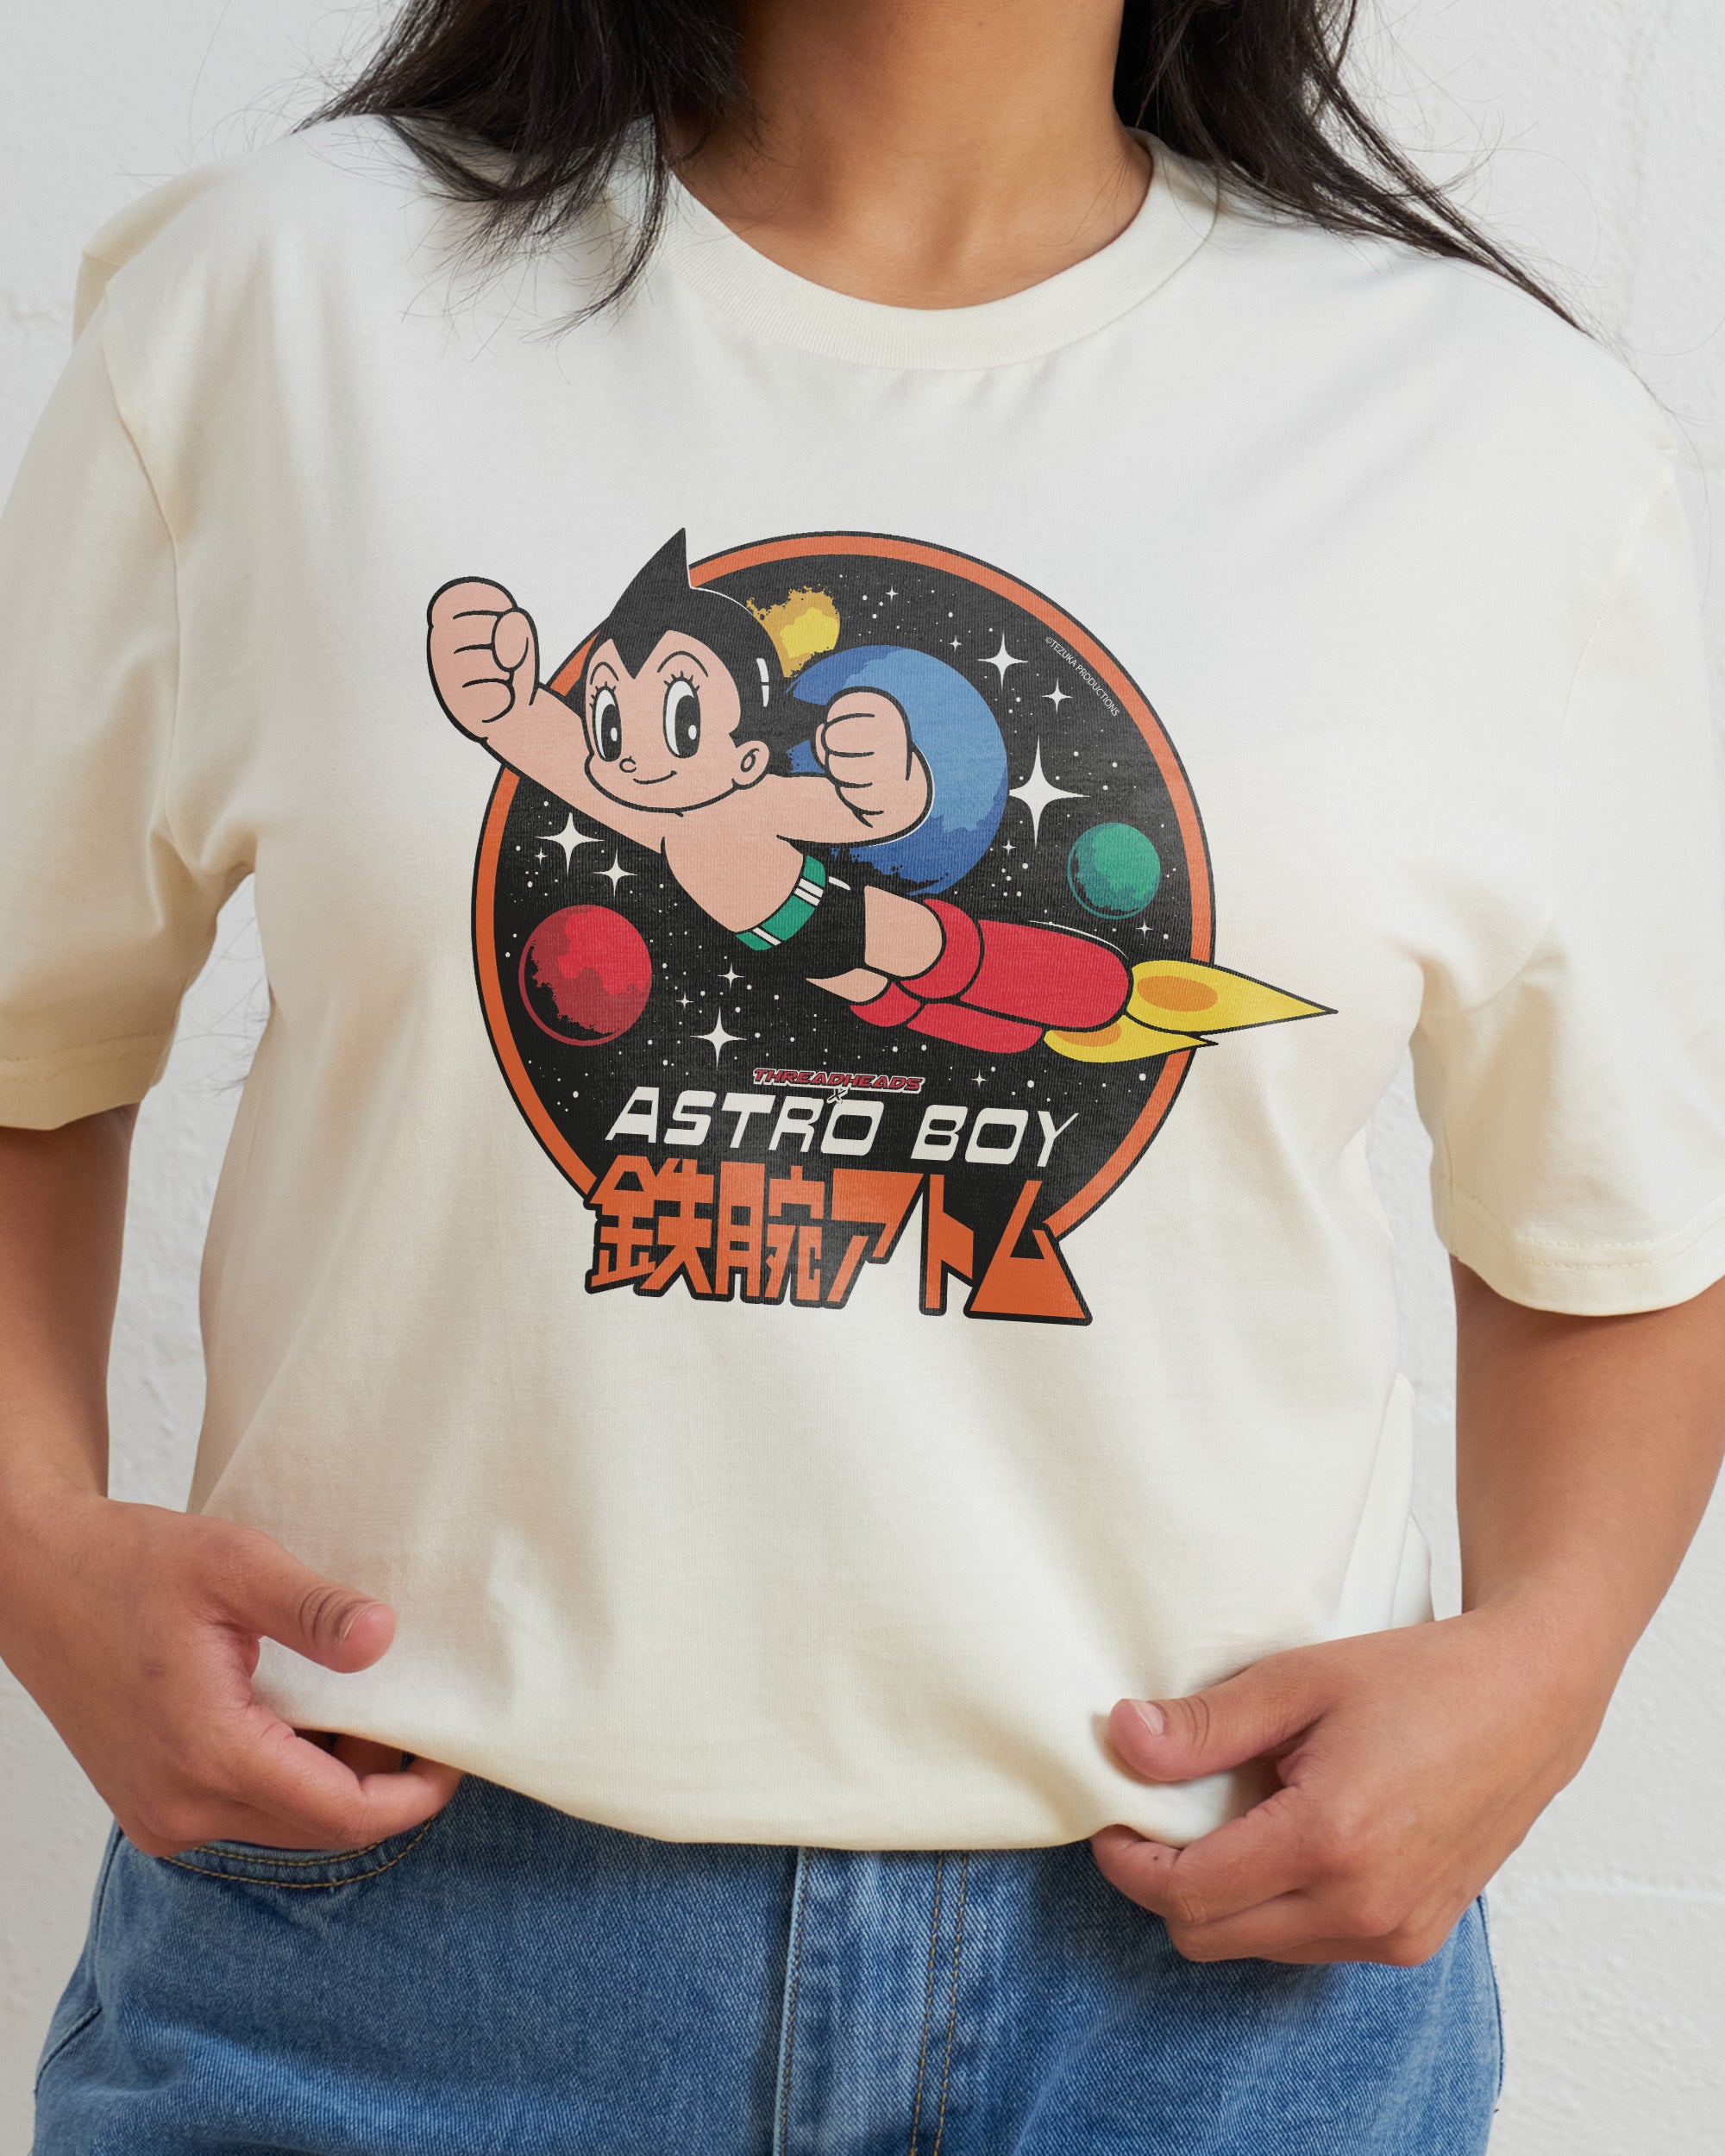 Cosmic Astro Boy T-Shirt